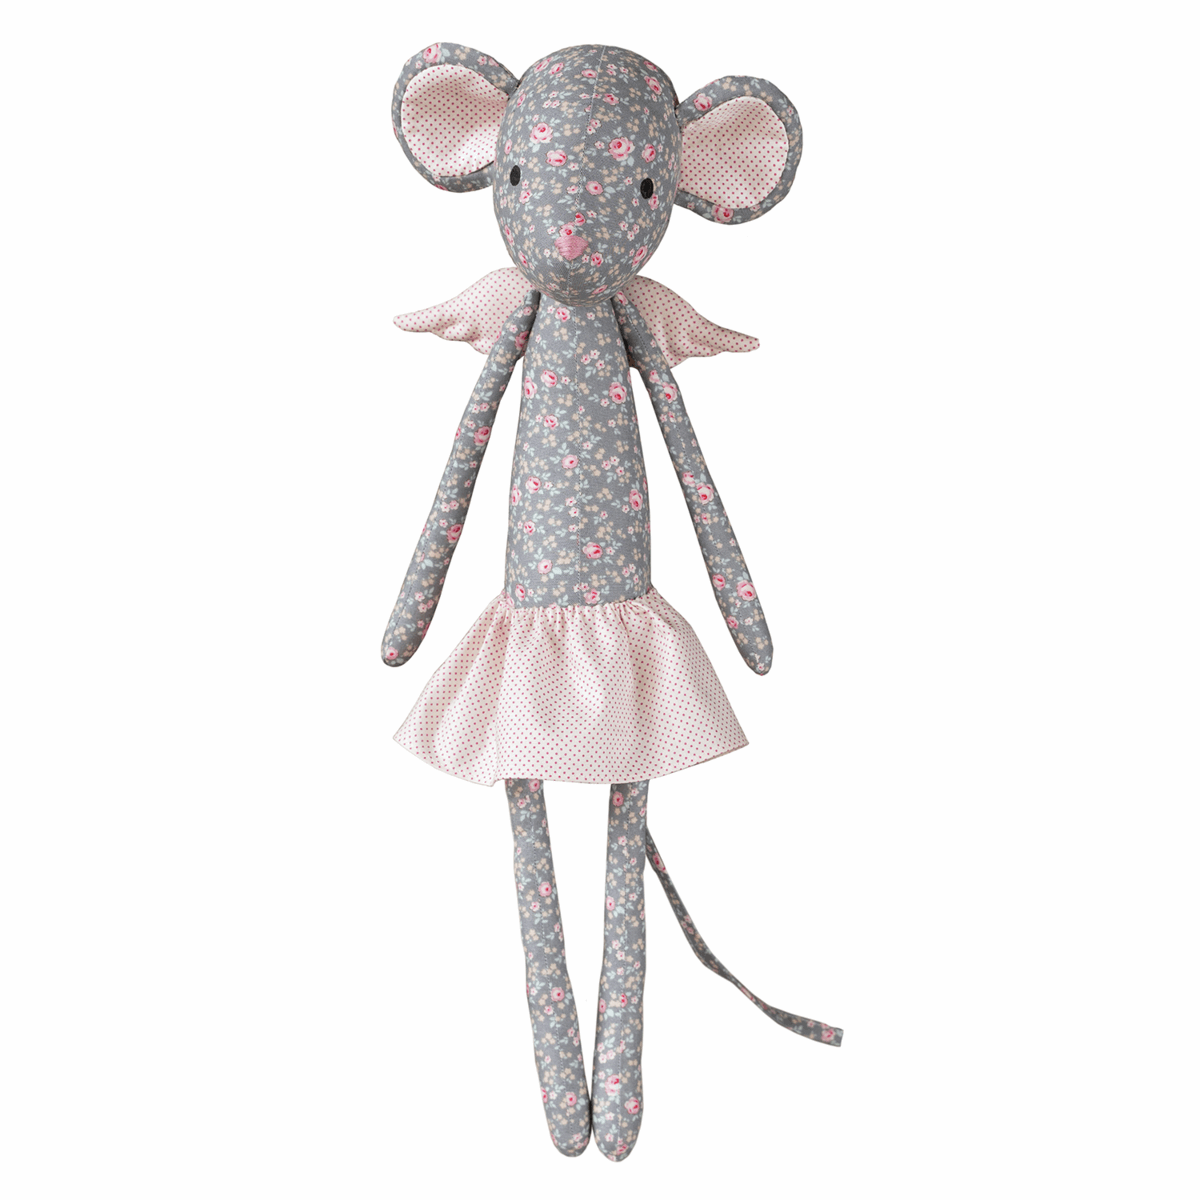 Tilda Old Rose, Angel Mouse Sewing Kit